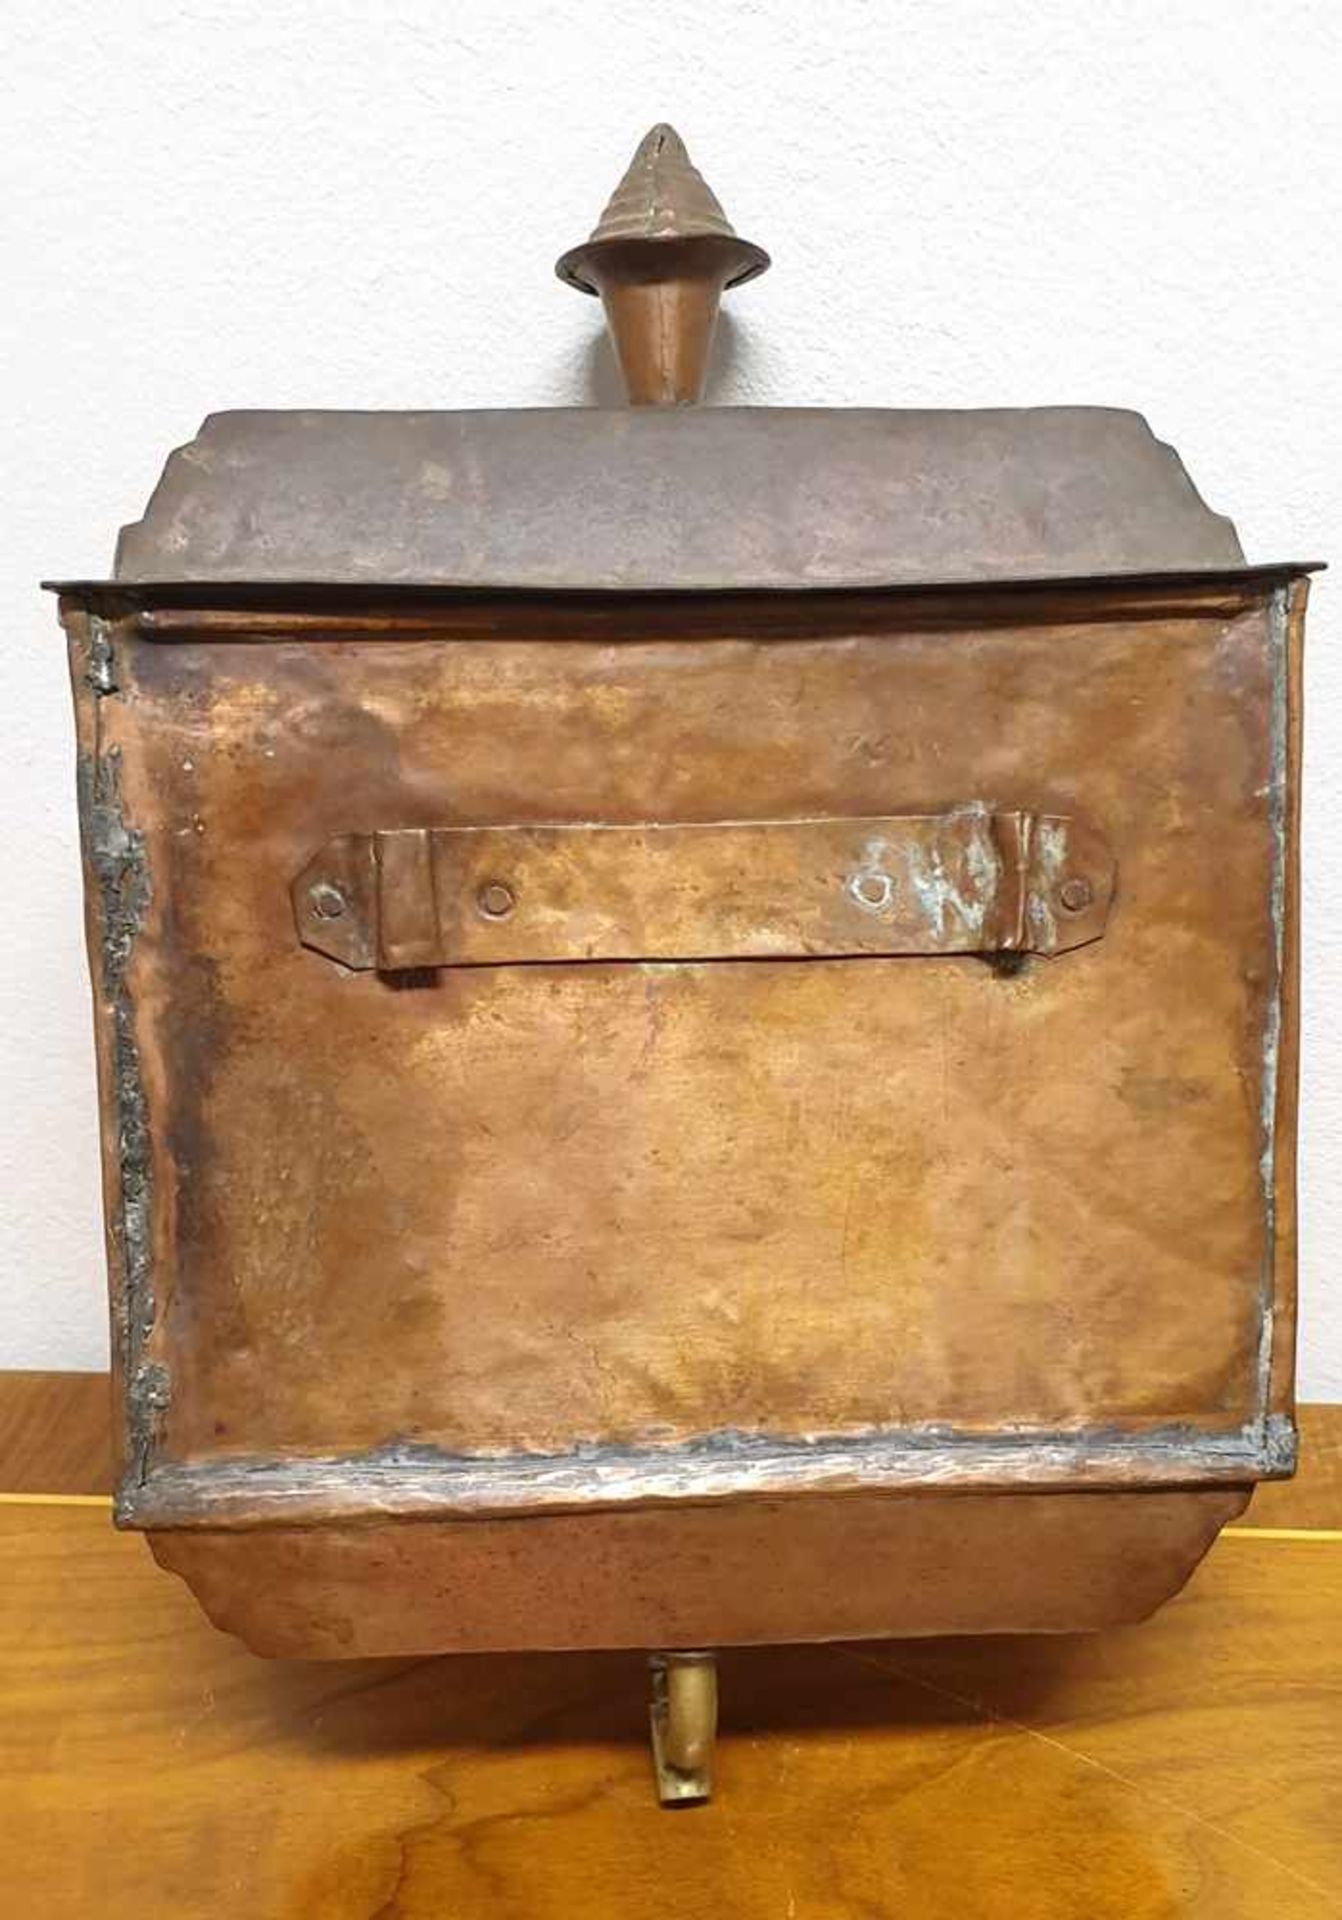 Lavabeau, Waschgarnitur, Kupfer , 18.Jahrhundert , mit Becken und Wasserbehälter, Adelswappen, - Bild 5 aus 6